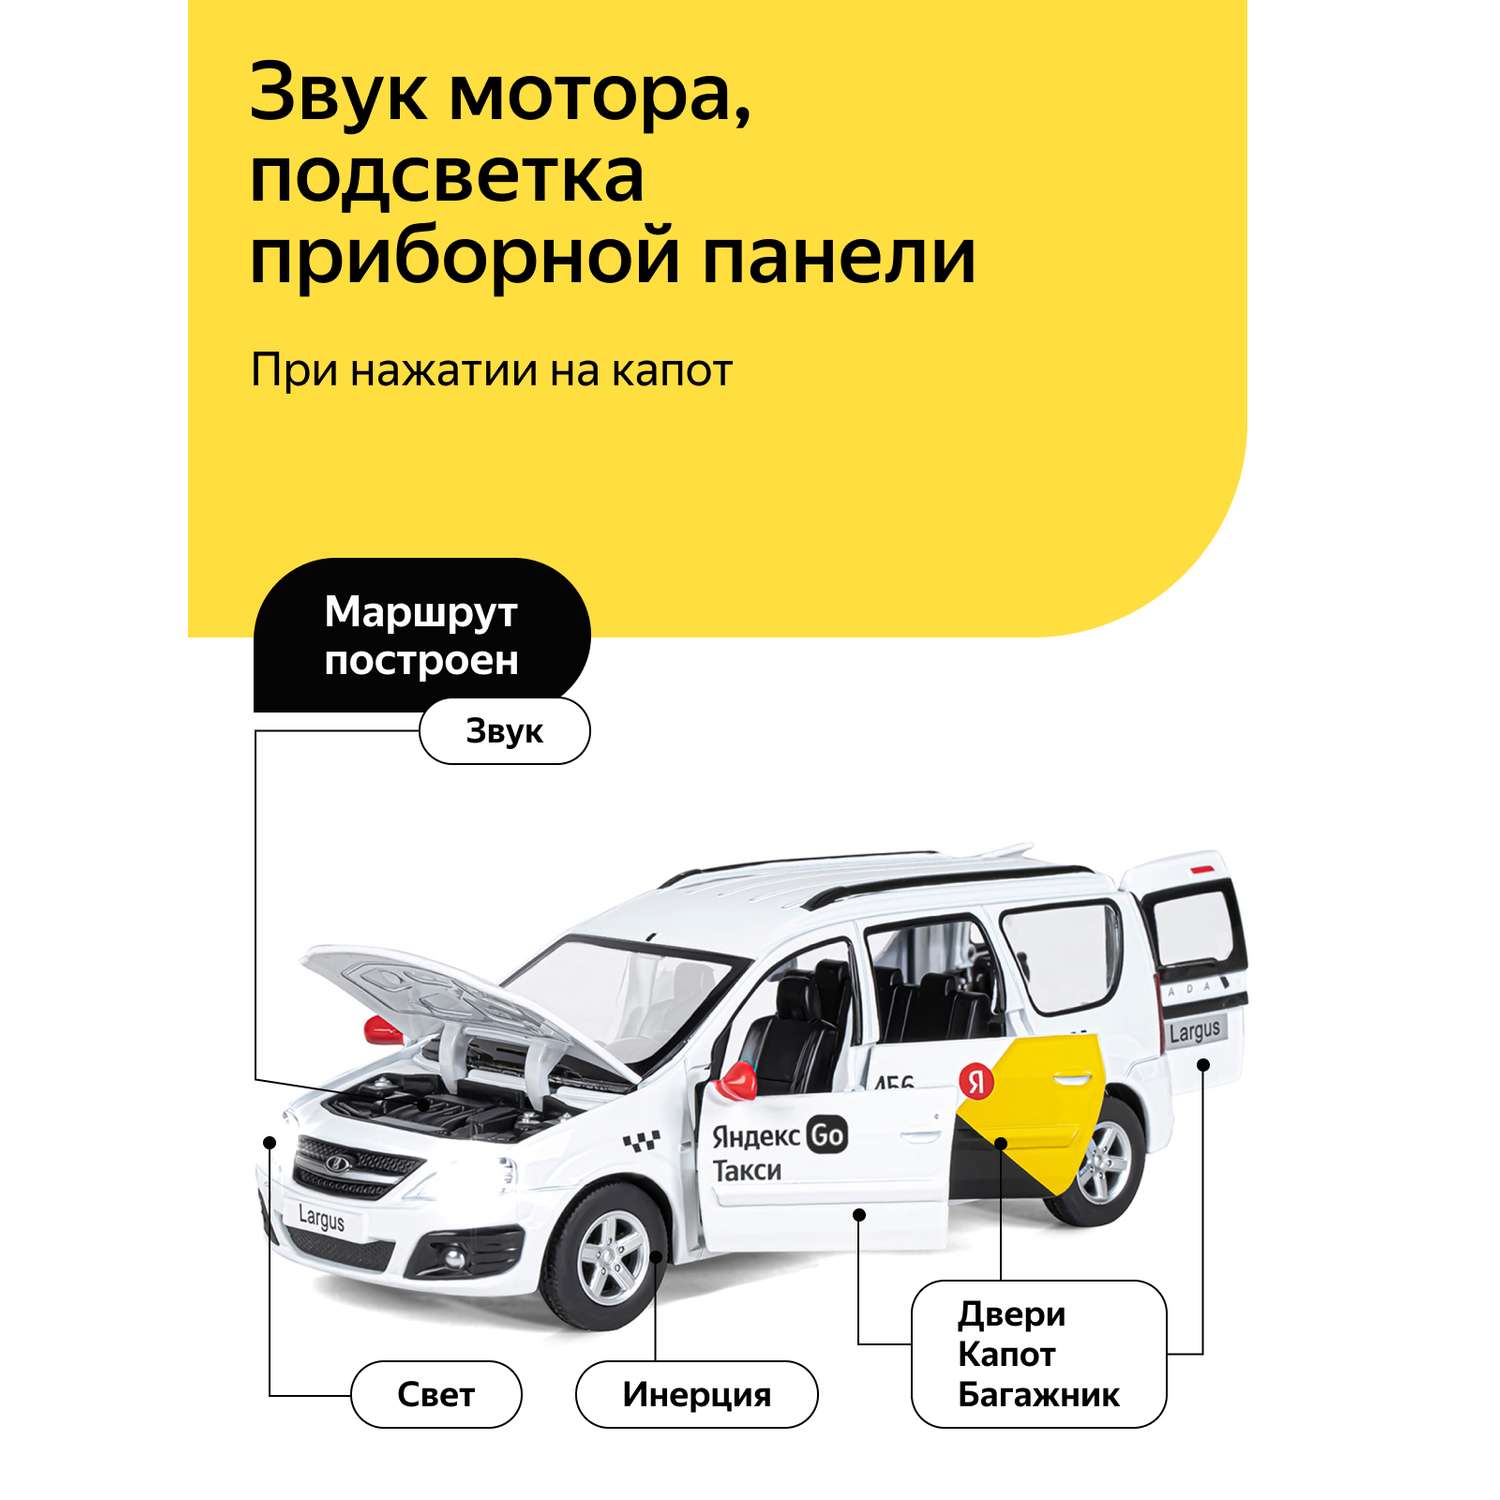 Машинка металлическая Яндекс GO игрушка детская LADA LARGUS 1:24 белый Озвучено Алисой JB1251343/Яндекс GO - фото 2